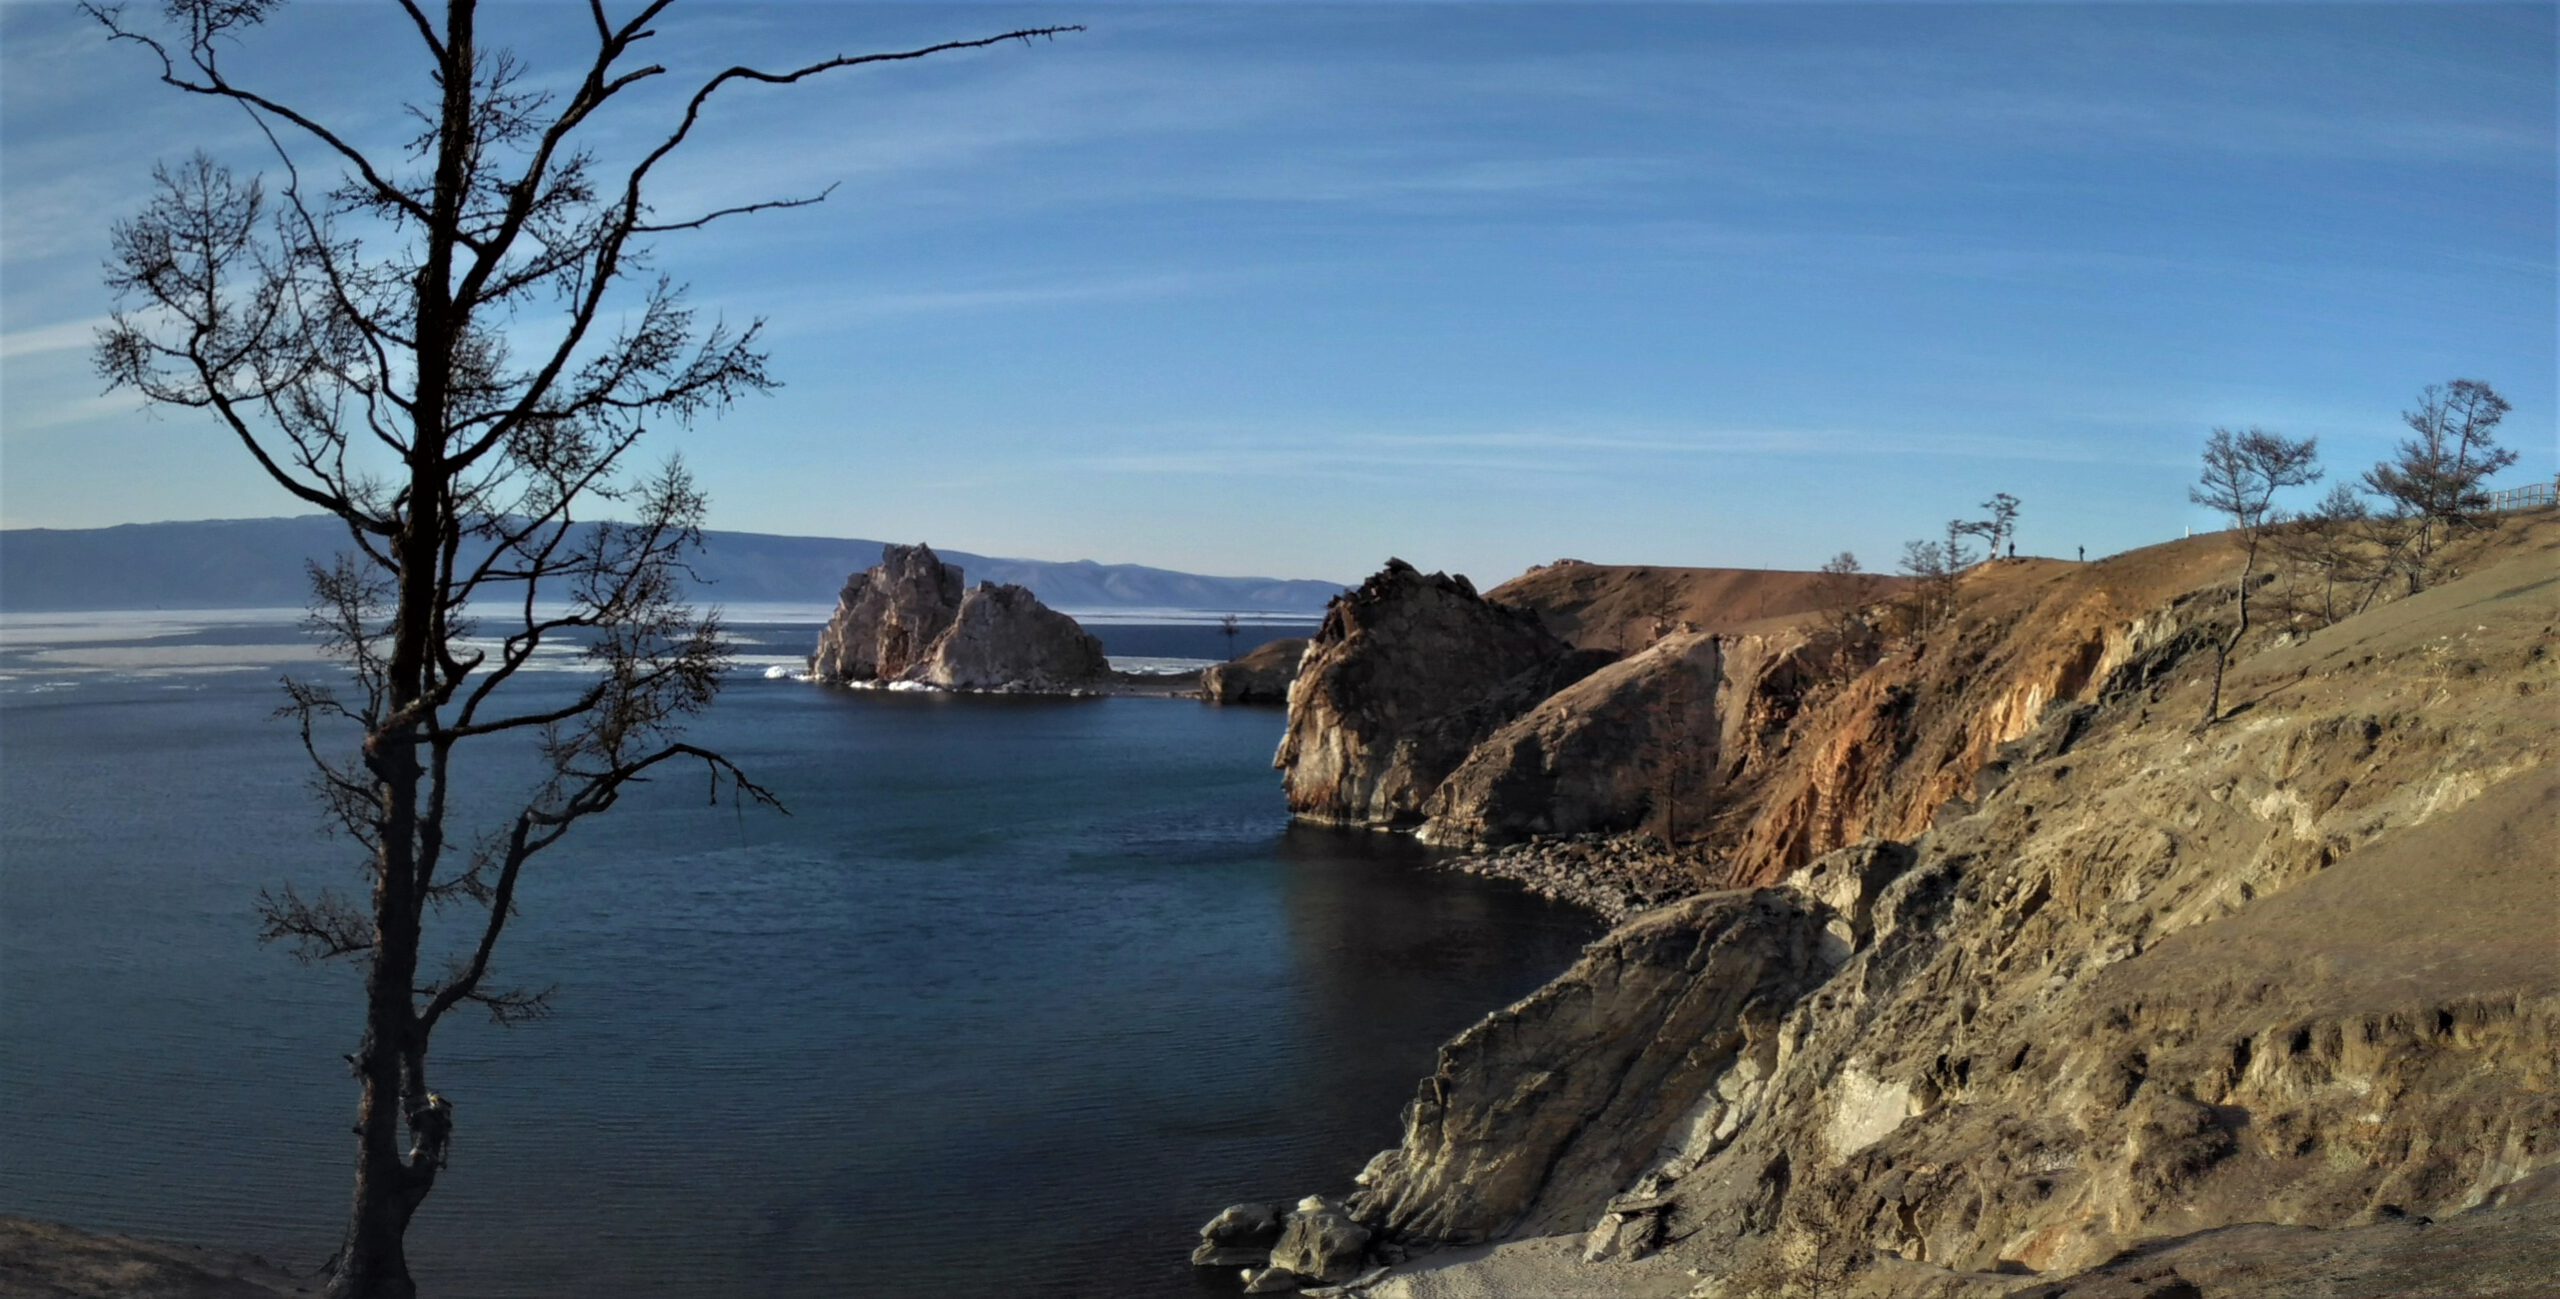 Blick auf den Schamanenfelsen über das Blaue Wasser des Baikalsees. Links im Bild ein kahler Baum. Rechts die steile Küste Olchons. Blauer Himmel.